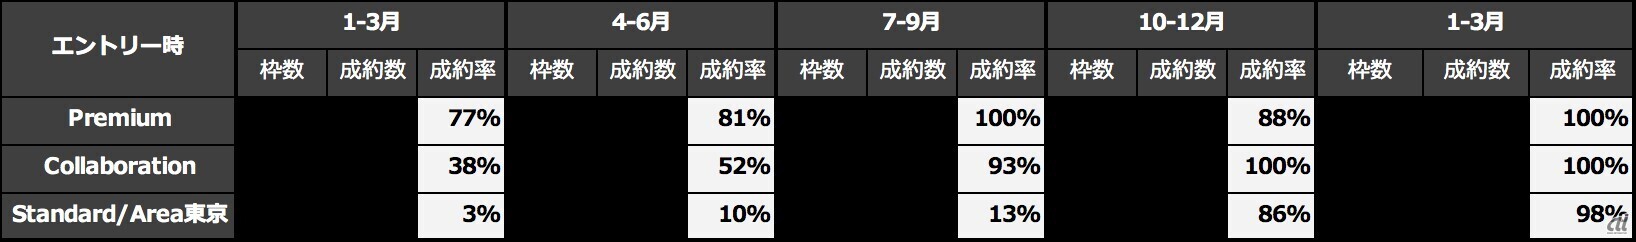 「Tokyo Prime」の2021年のメニュー別エントリー状況。7月以降、通常申込み受付開始後すぐにほとんどの枠が完売となり、100％に近い成約率を維持している